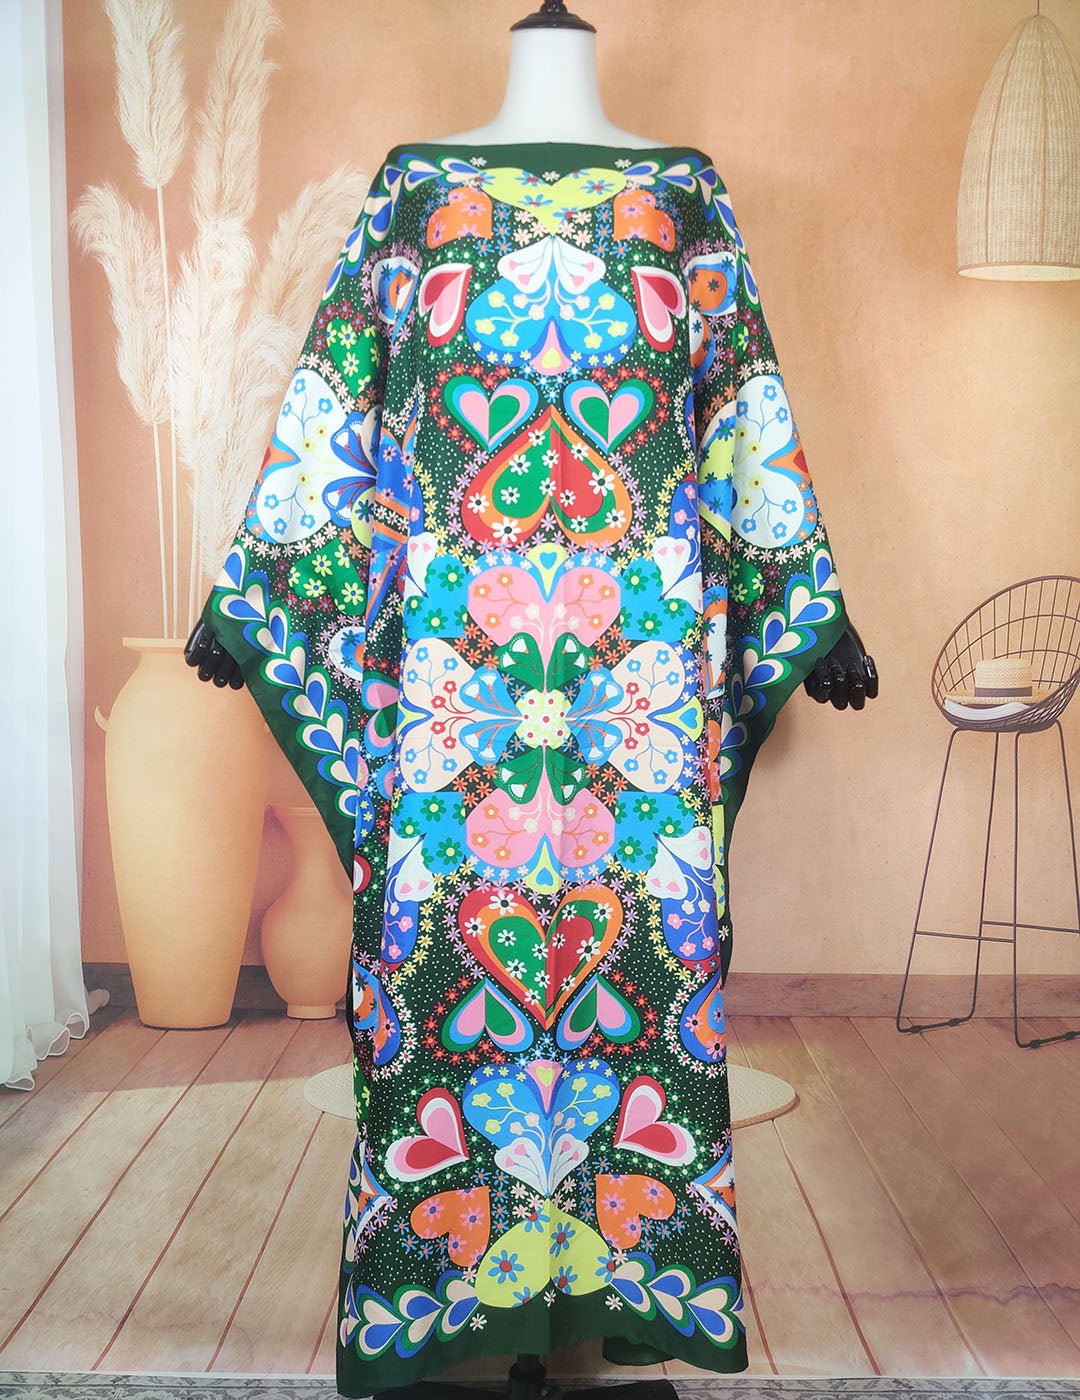 Oversized African Kaftan Dress for Women Elegant Bohemian Style Casual Wear - Flexi Africa - Free Delivery Worldwide